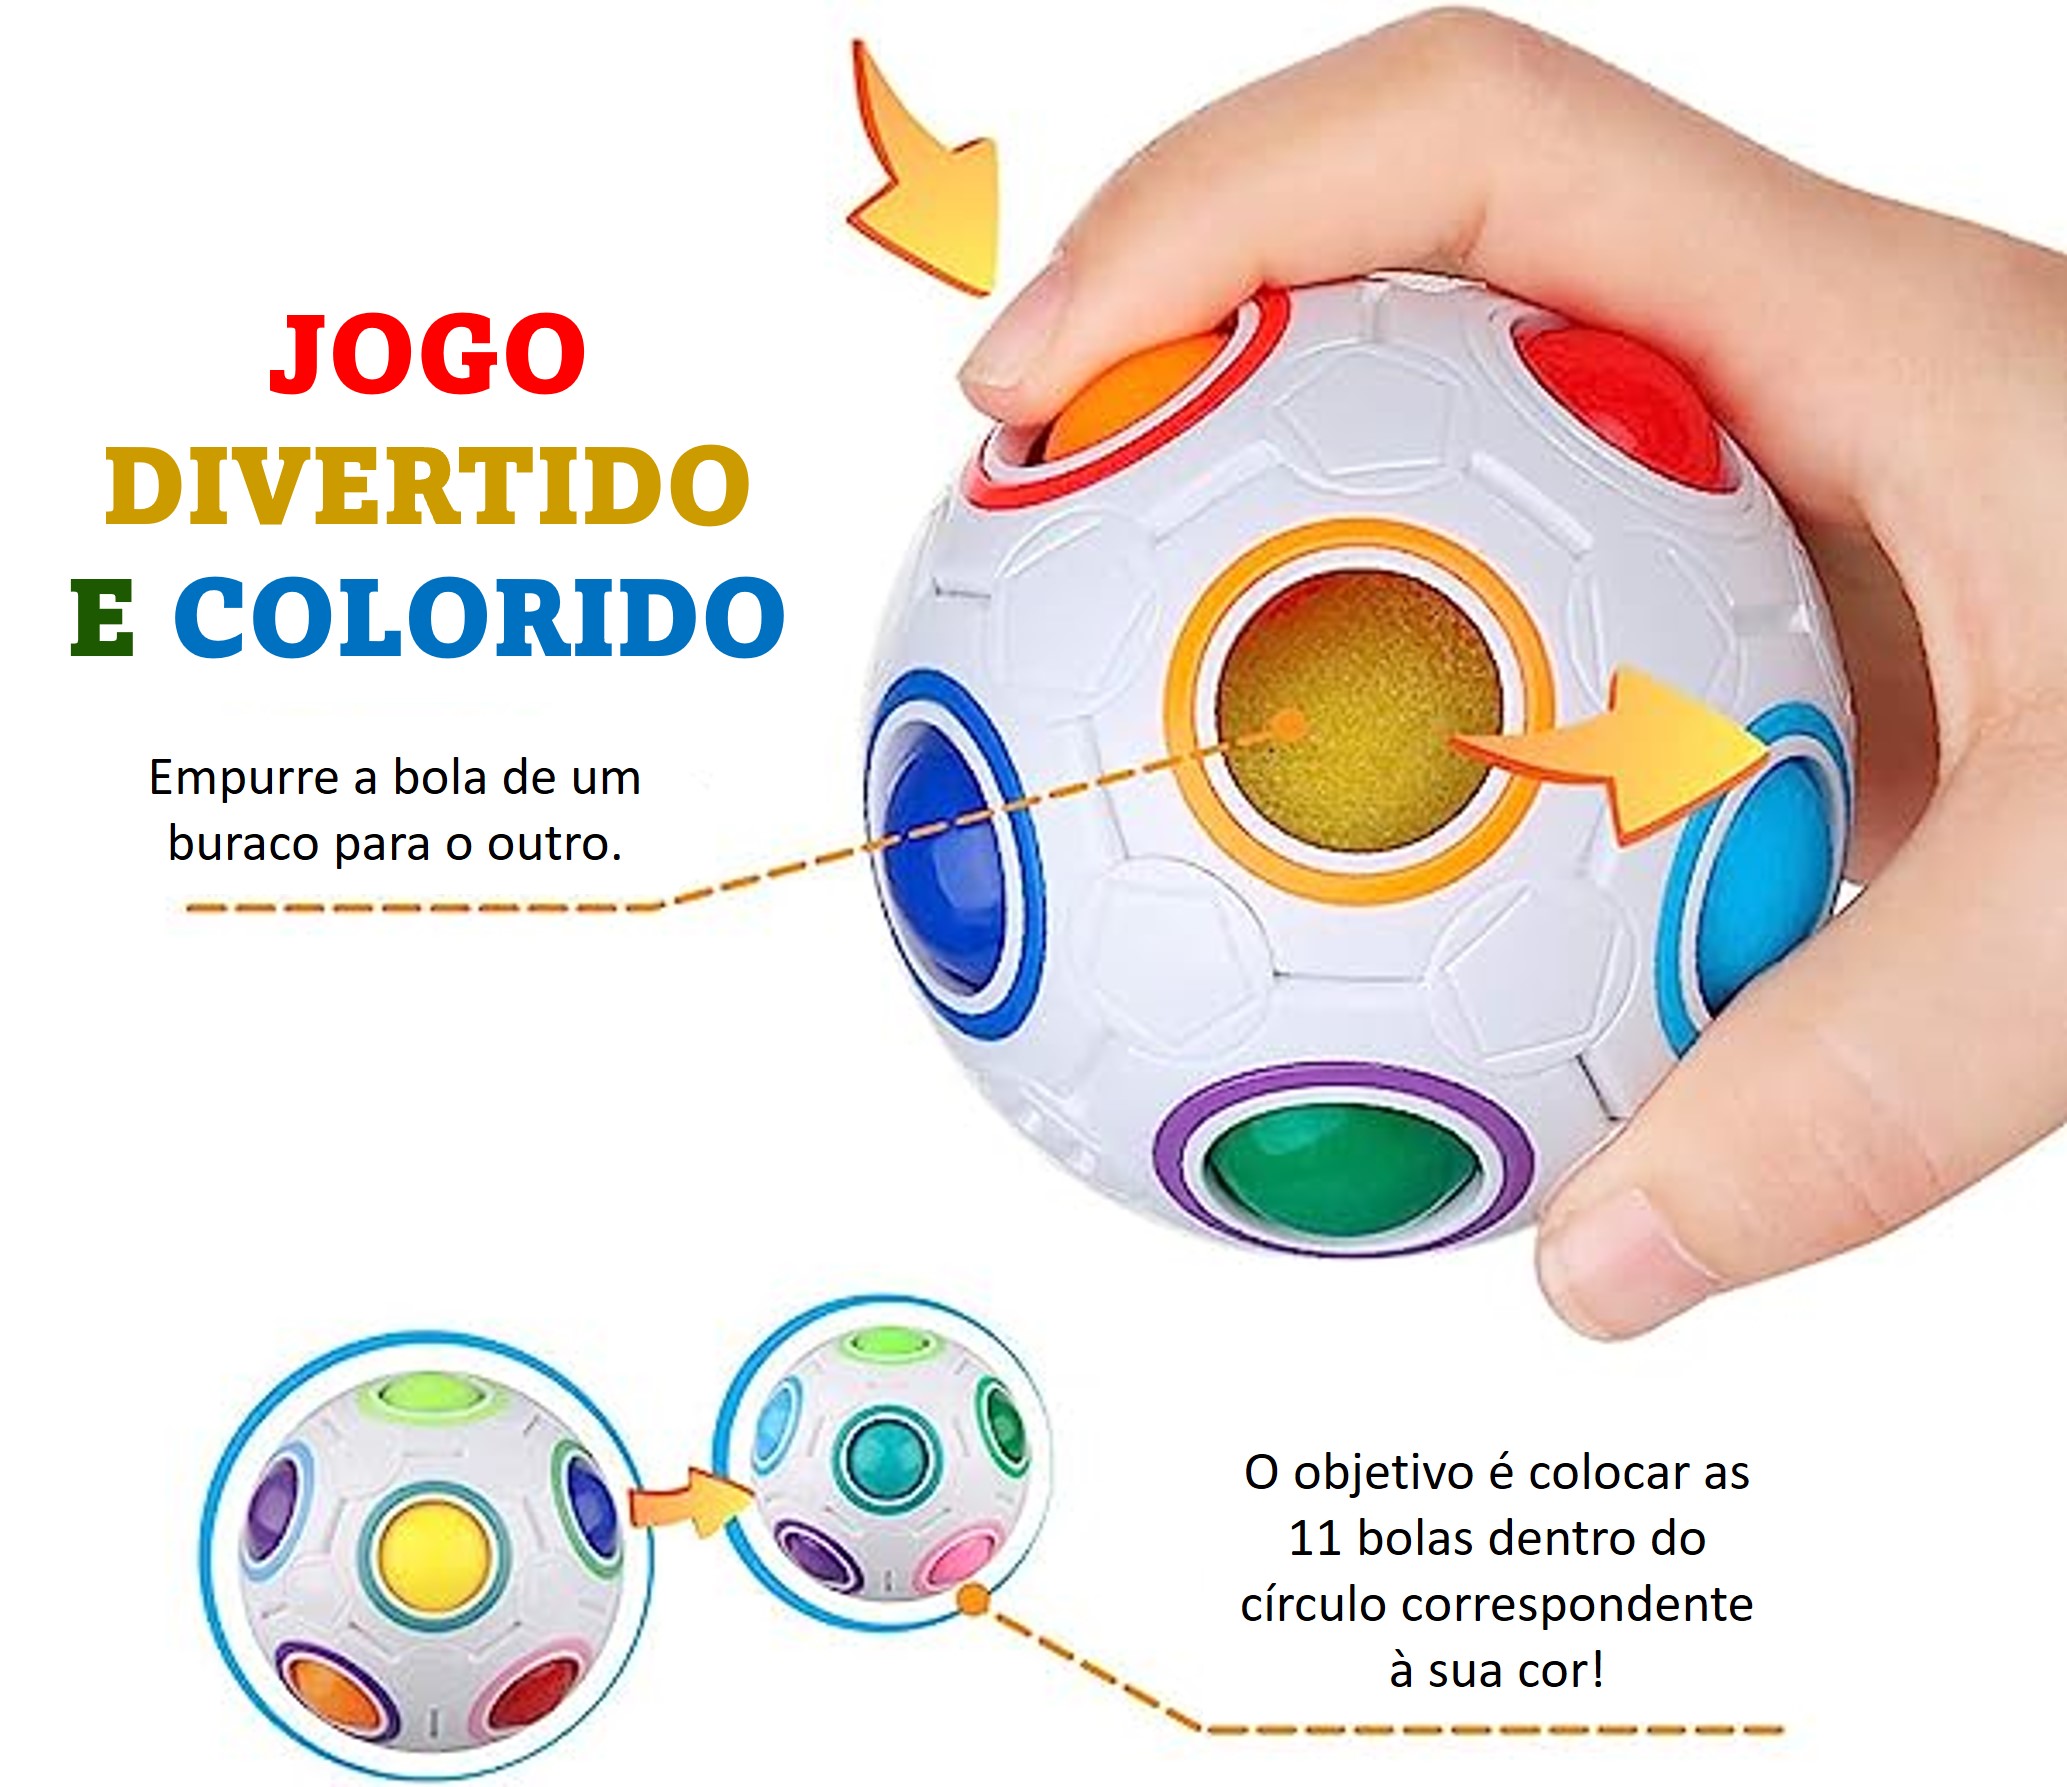 Brinquedo quebra-cabeça esférico de cor com bolas coloridas, isoladas no  fundo branco.